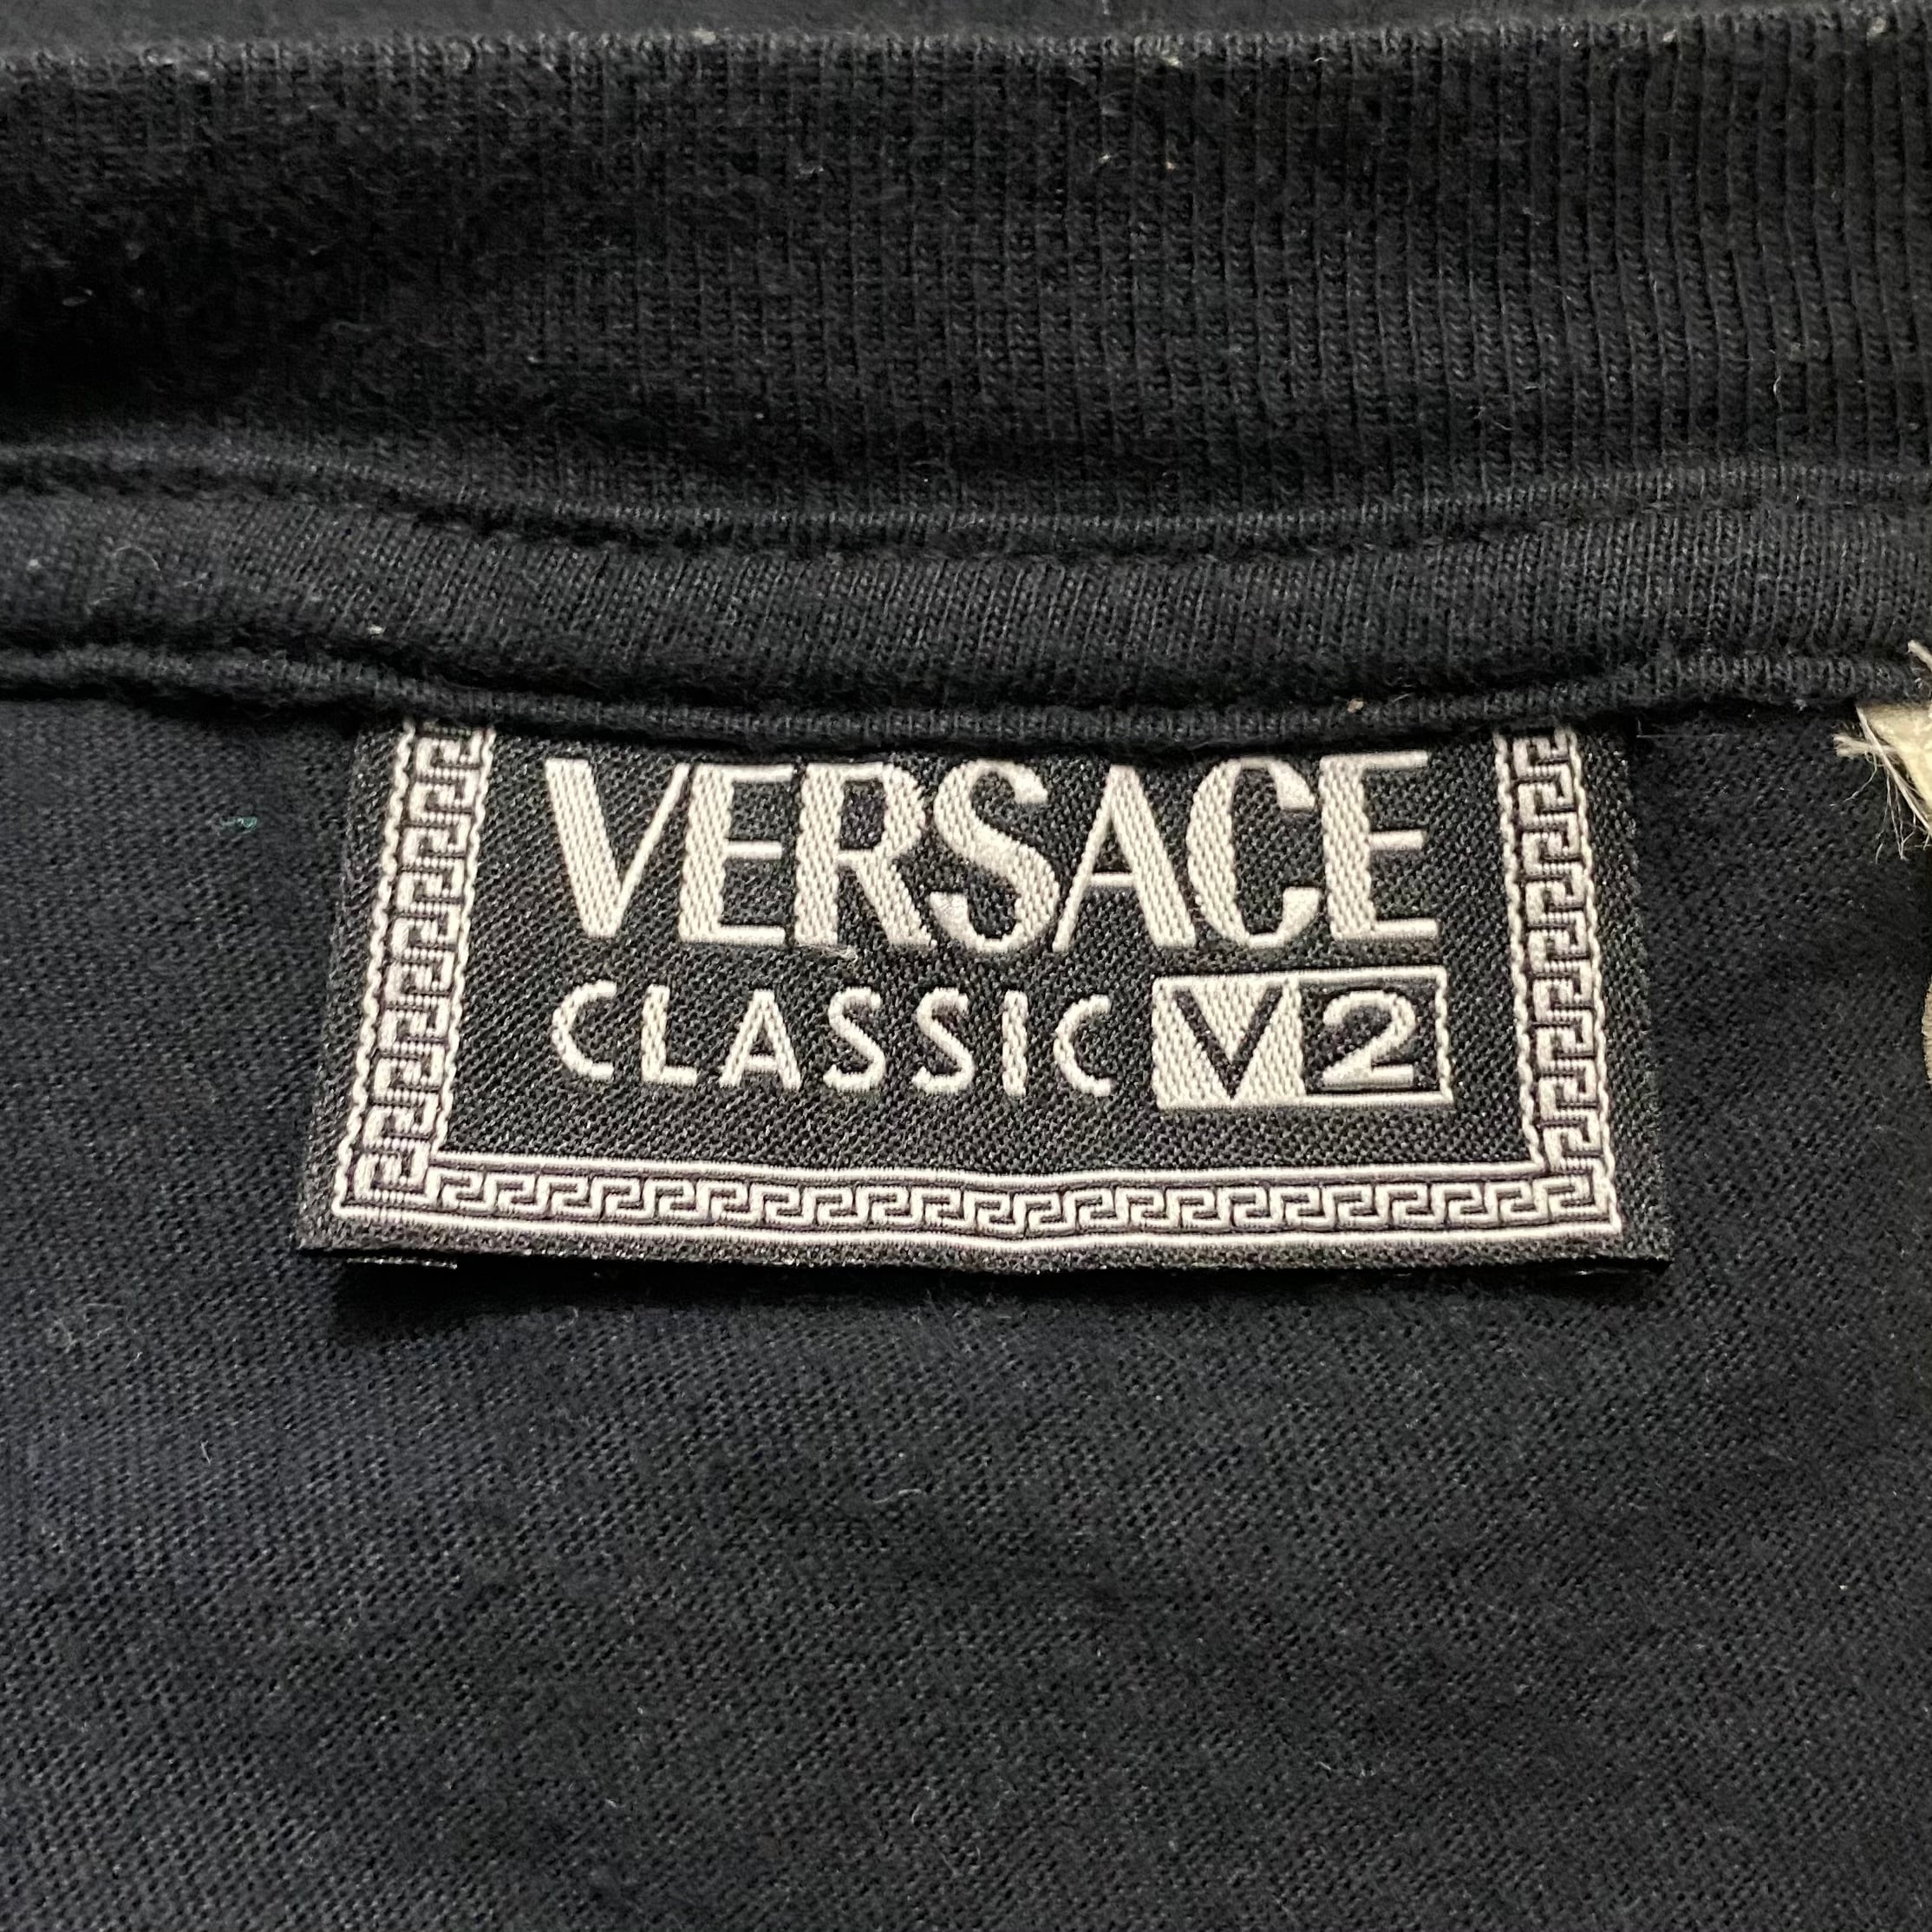 メンズ【新品タグ付】Versace  Classic V2 青 Mサイズ